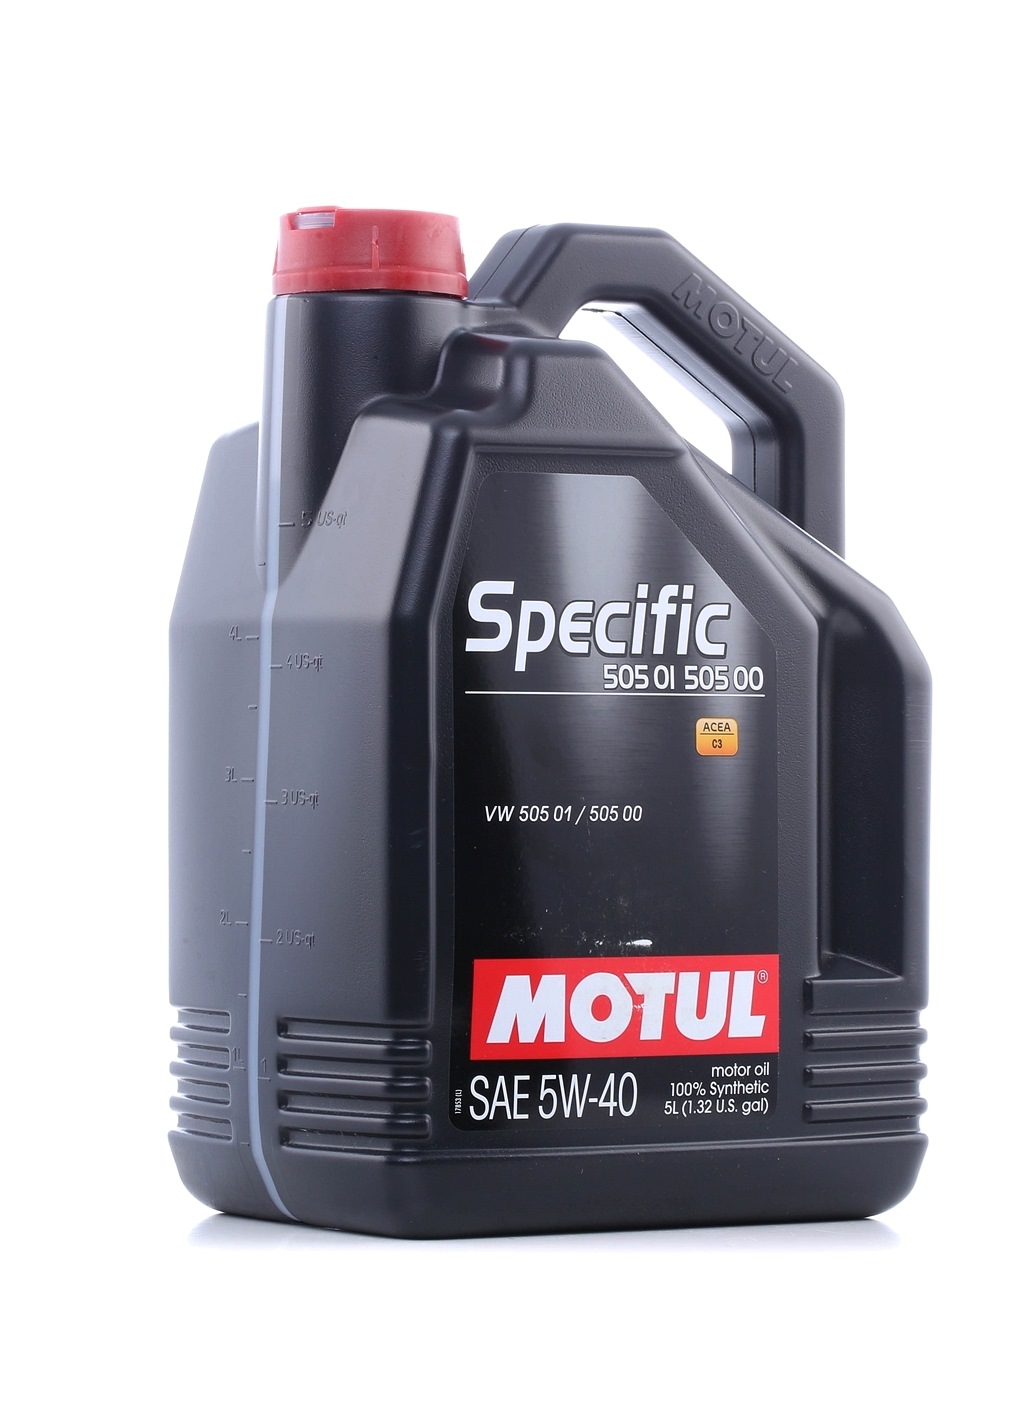 Comprar Aceite motor coche MOTUL 101575 SPECIFIC, 505 01 505 00 5W-40, 5L, Aceite sintetico